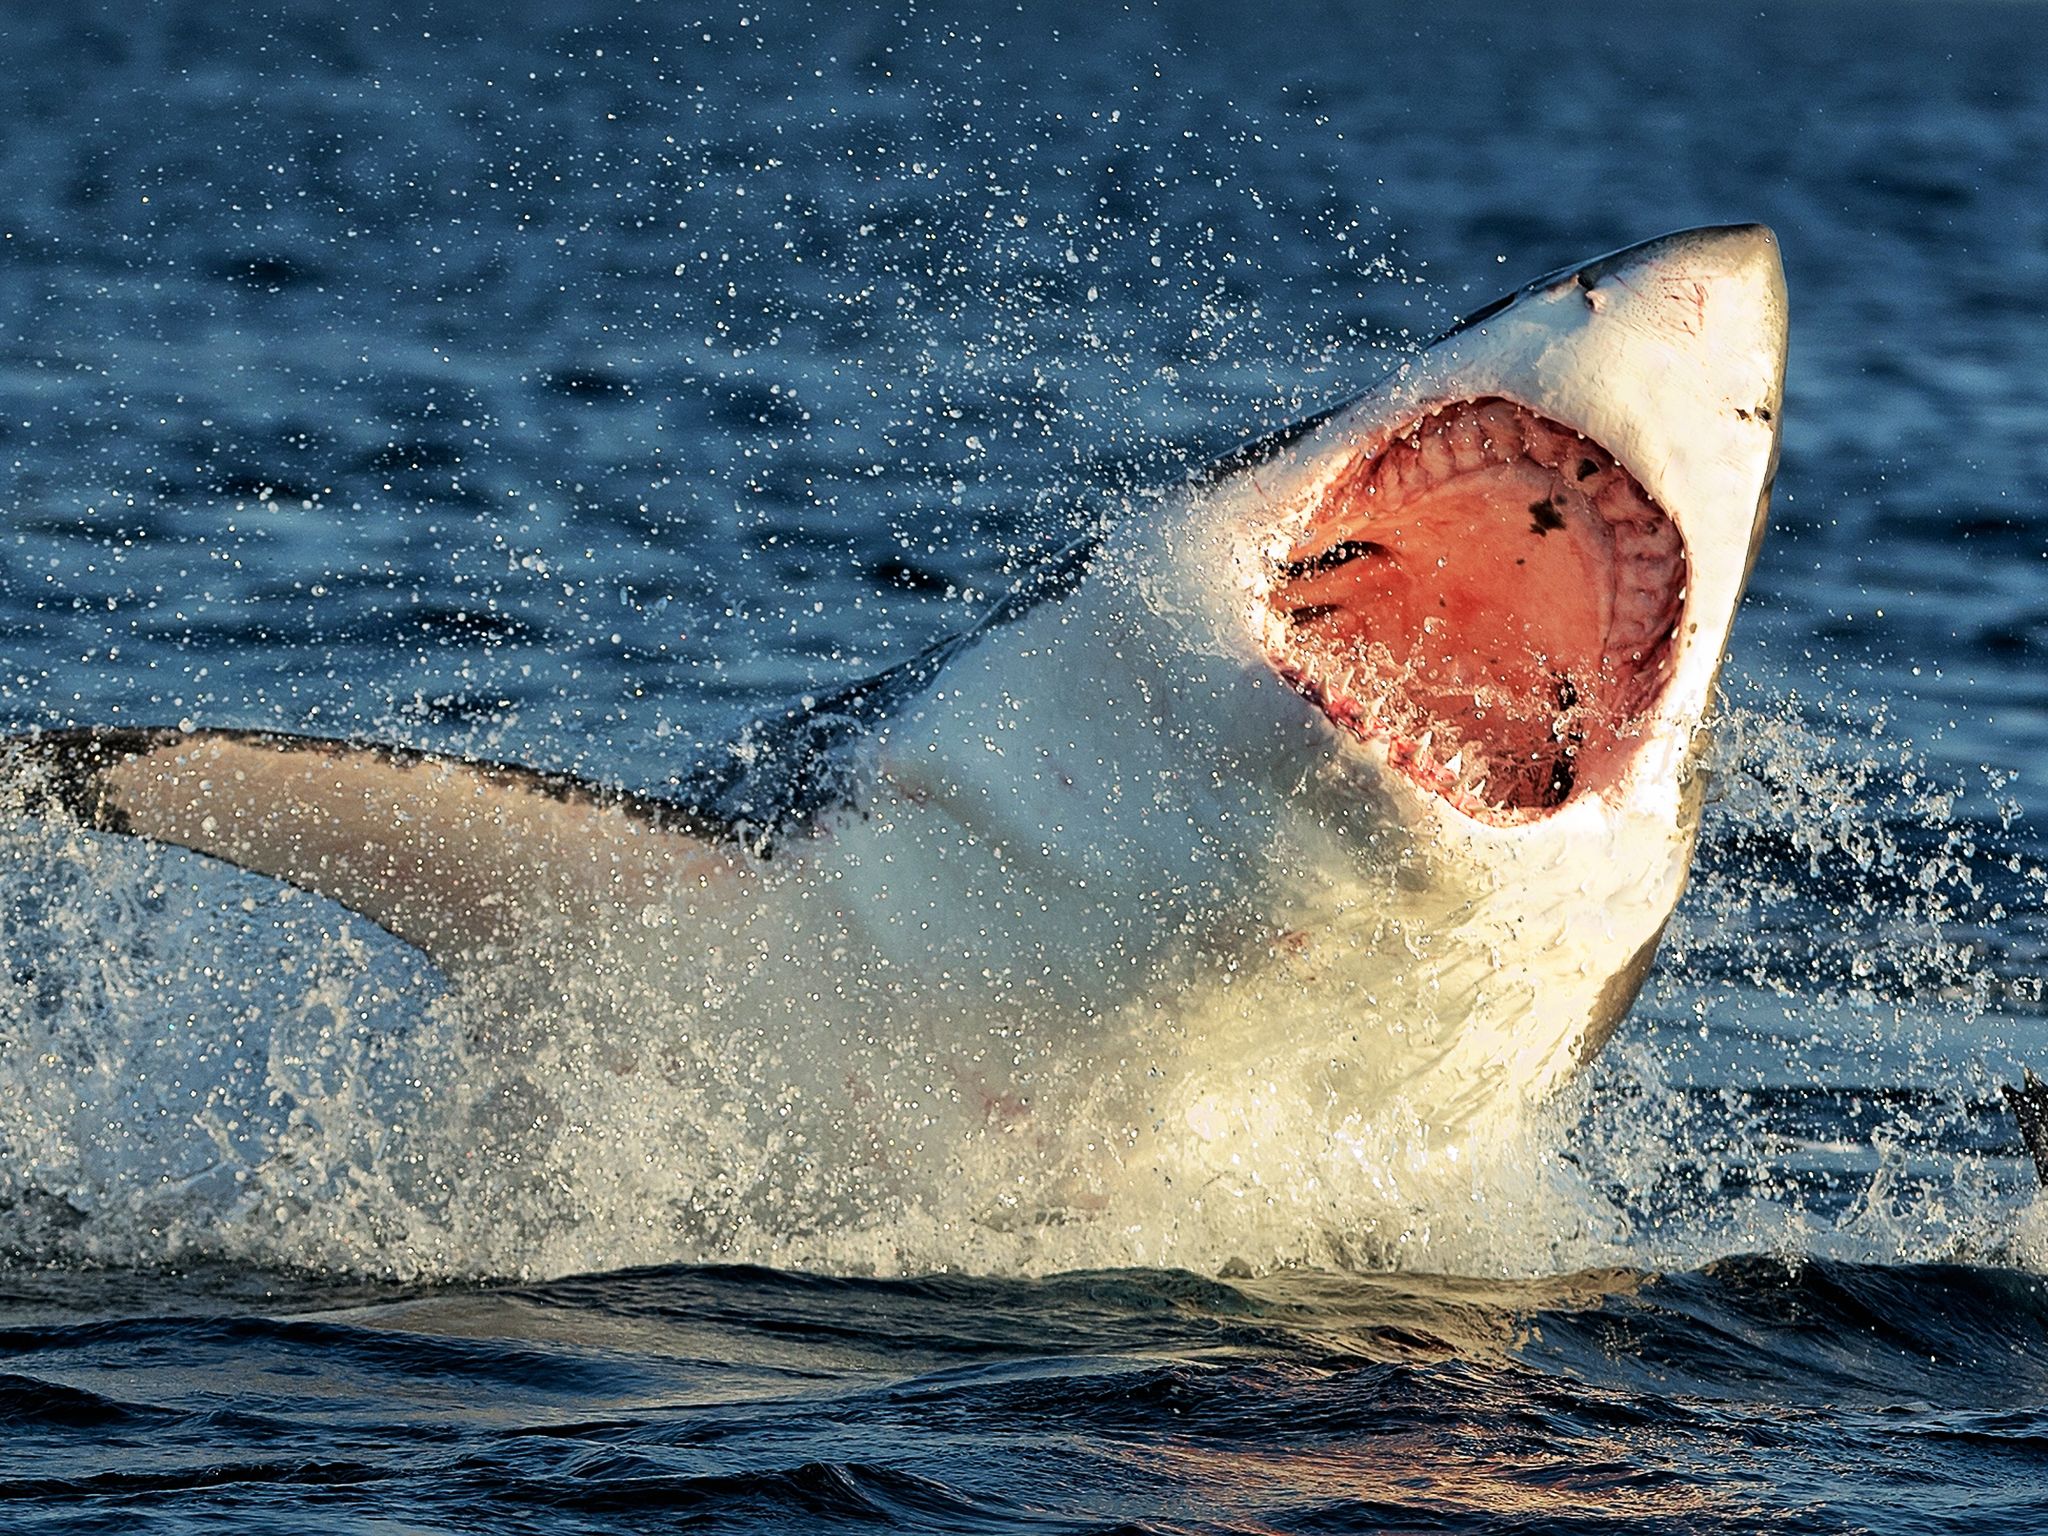 تنطلق أسماك القرش الأبيض الكبير كالصاروخ بسرعة 35... [Photo of the day - يناير 2015]